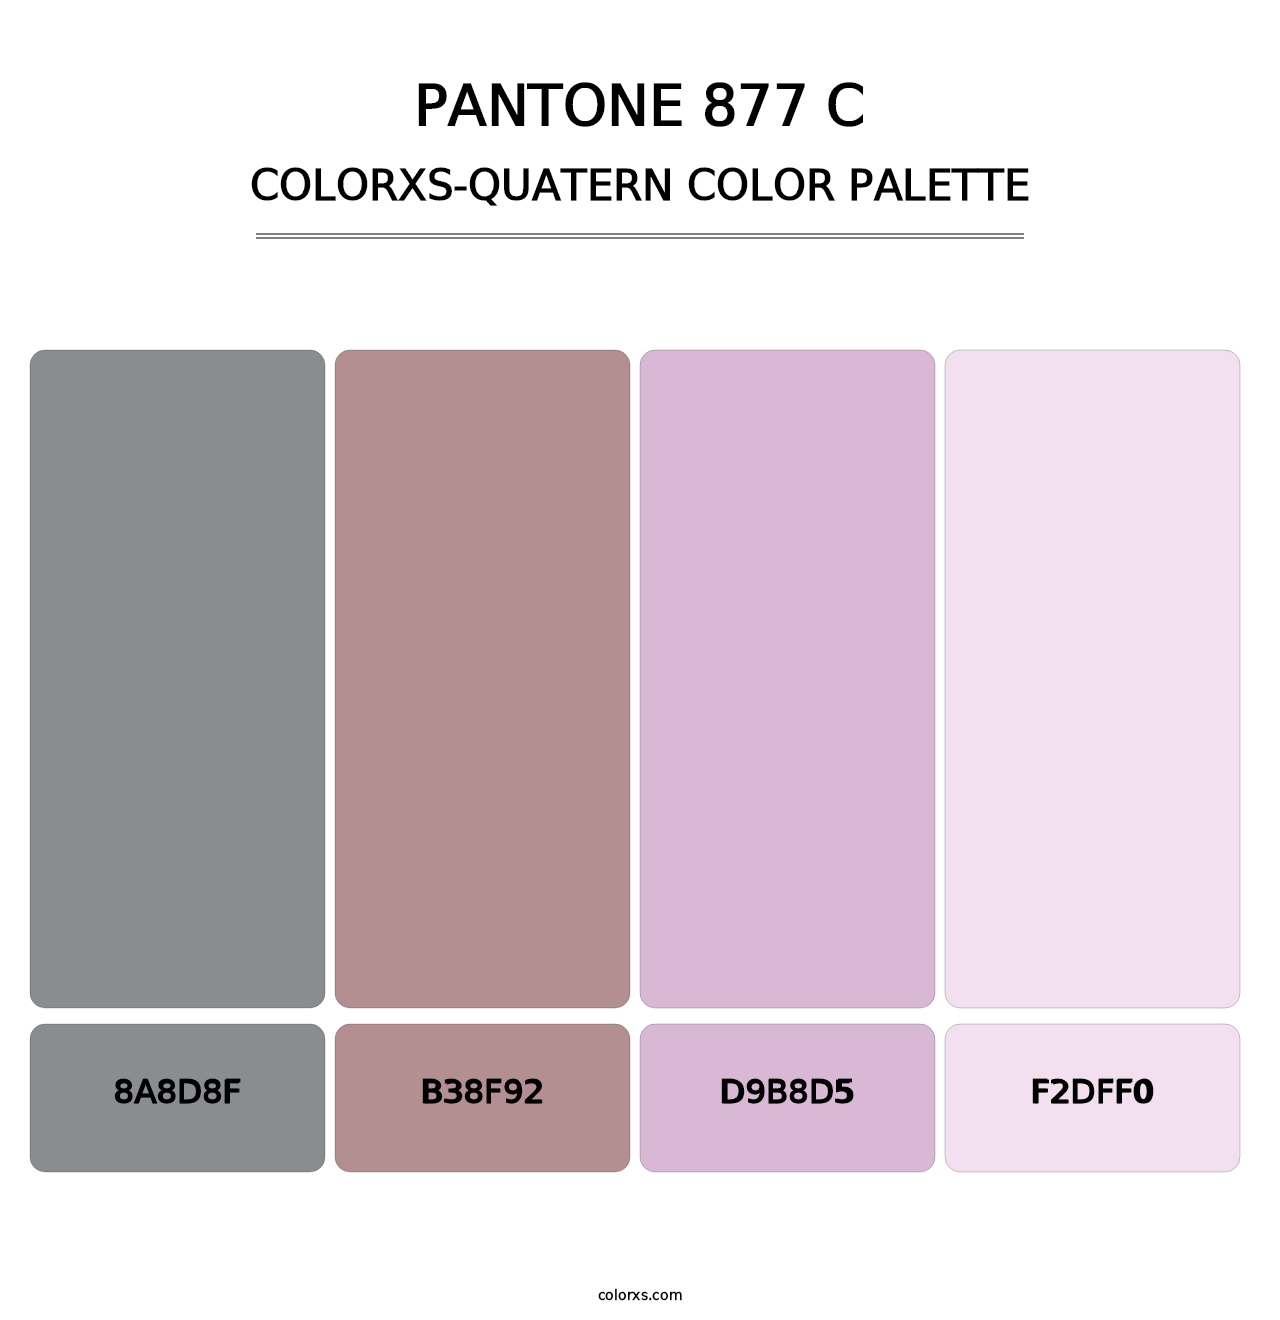 PANTONE 877 C - Colorxs Quatern Palette